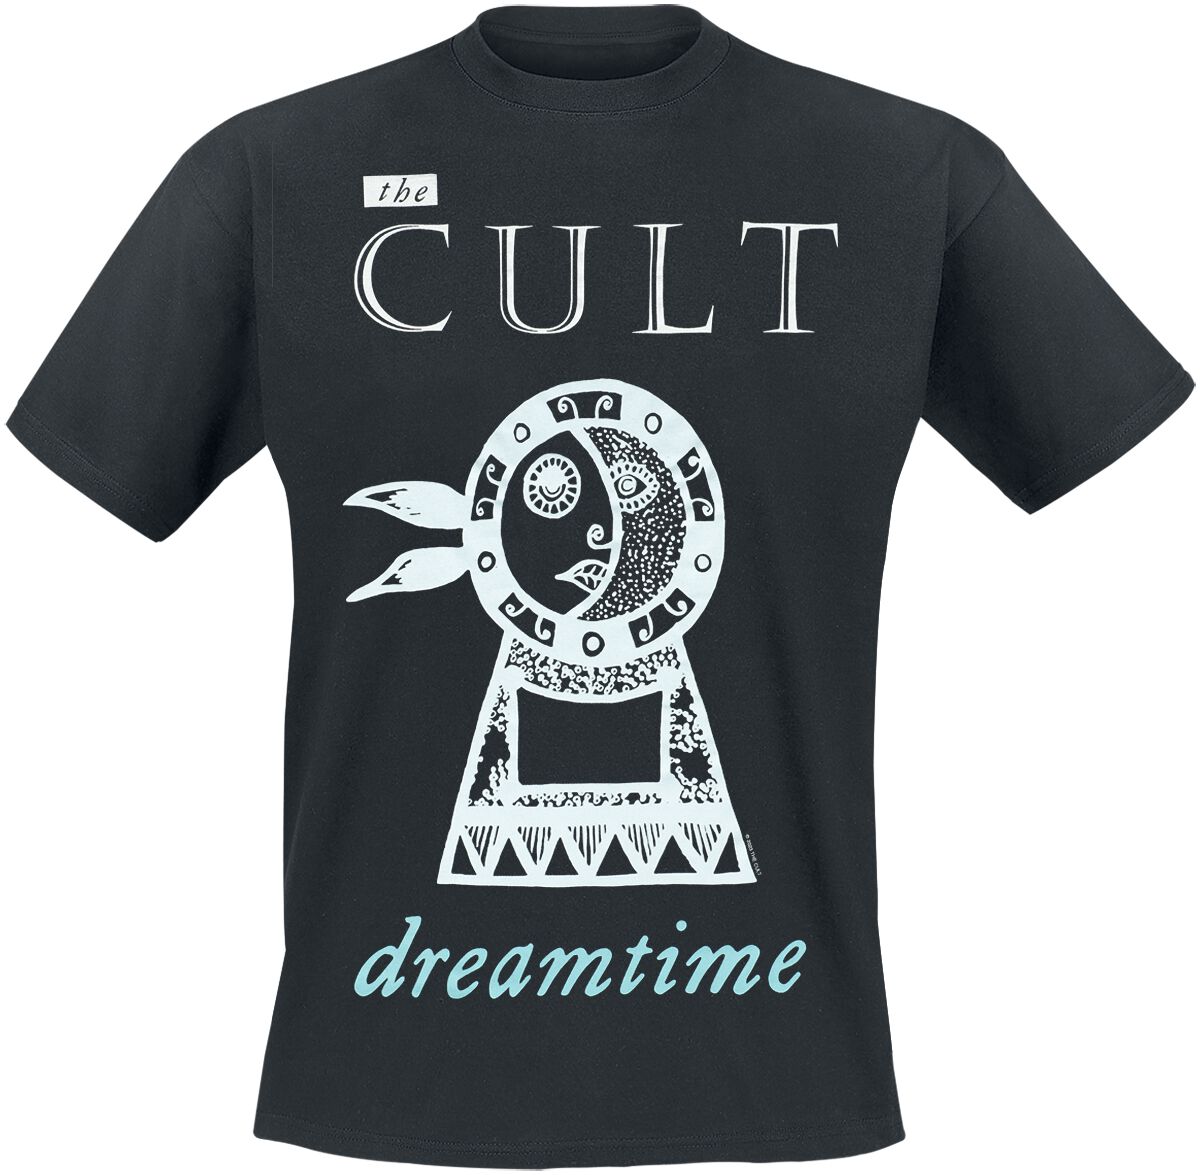 The Cult T-Shirt - Dreamtime - S bis 4XL - für Männer - Größe L - schwarz  - Lizenziertes Merchandise!